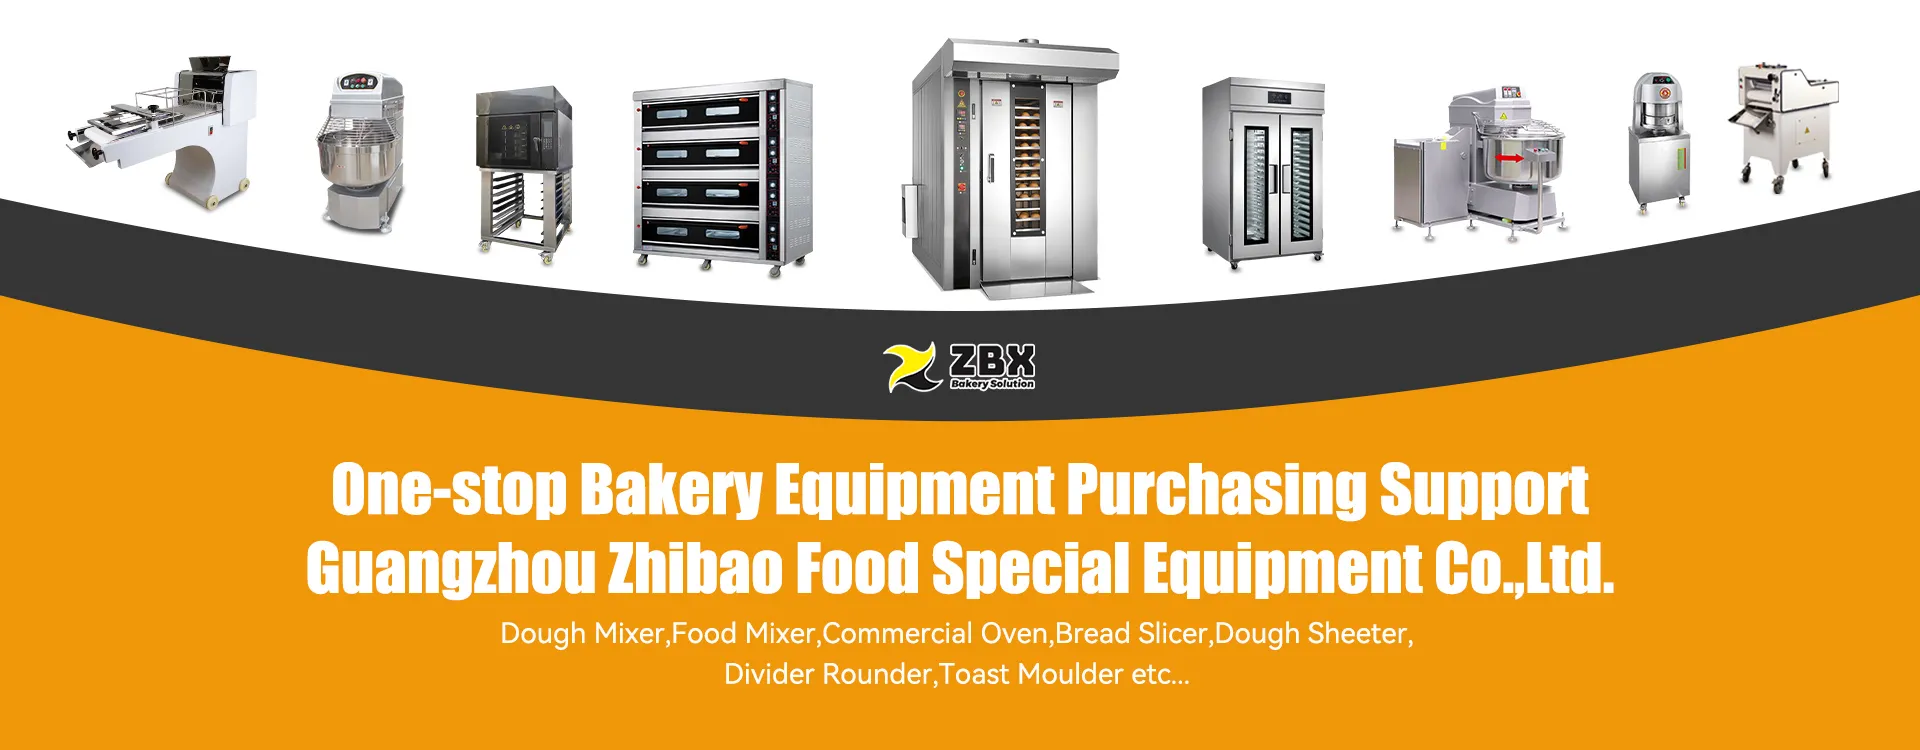 Guangzhou Zhibao Food Special Equipment Co., Ltd.